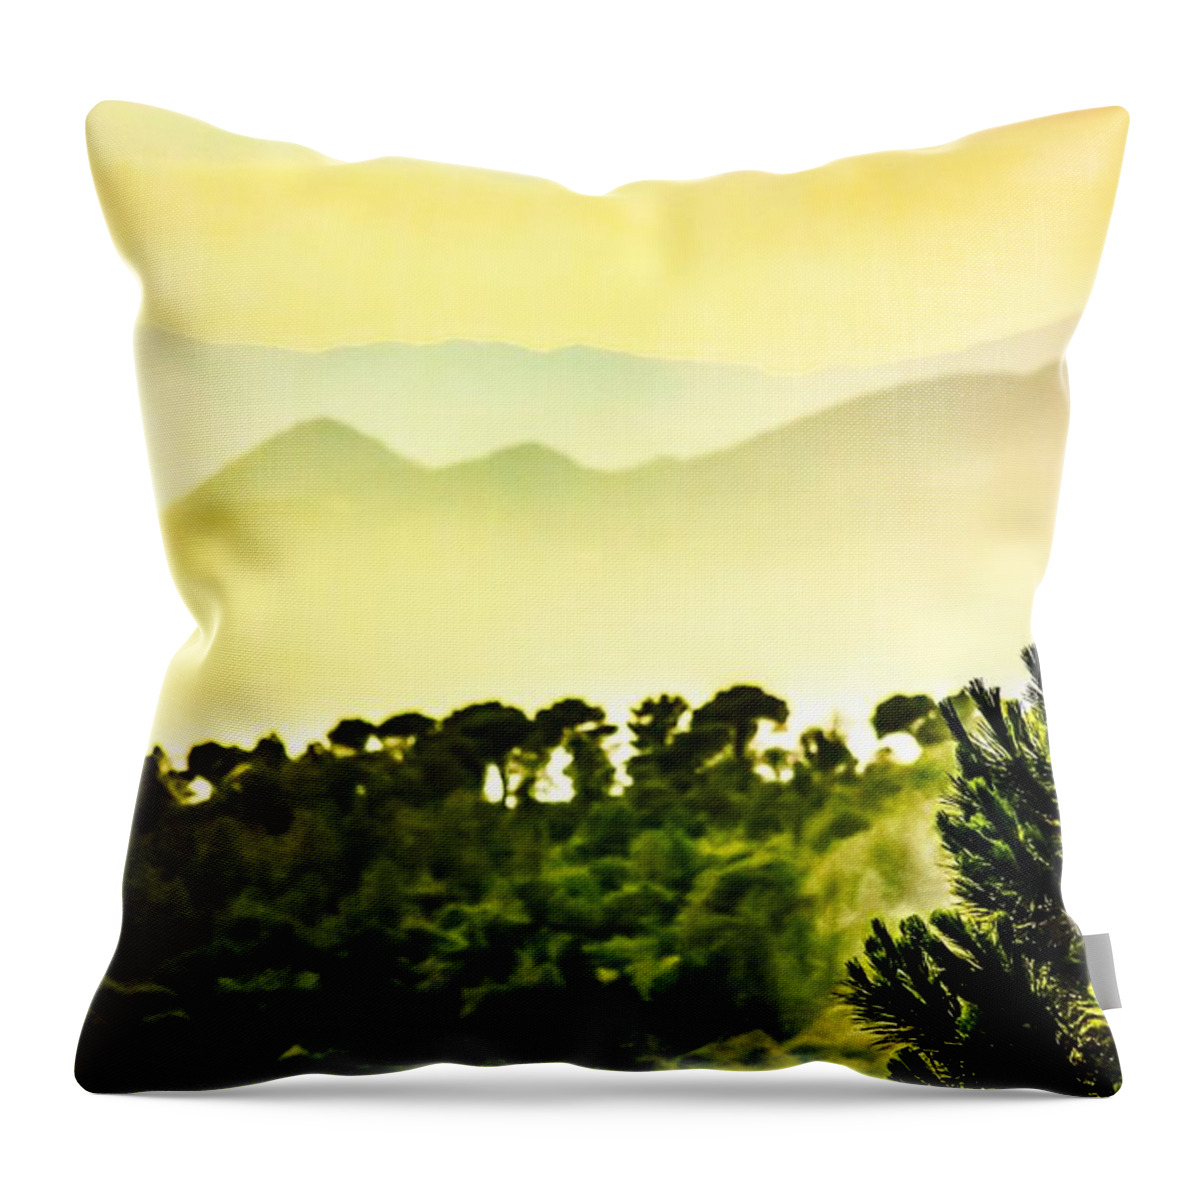 Art Throw Pillow featuring the digital art Golden Dream by Auranatura Art